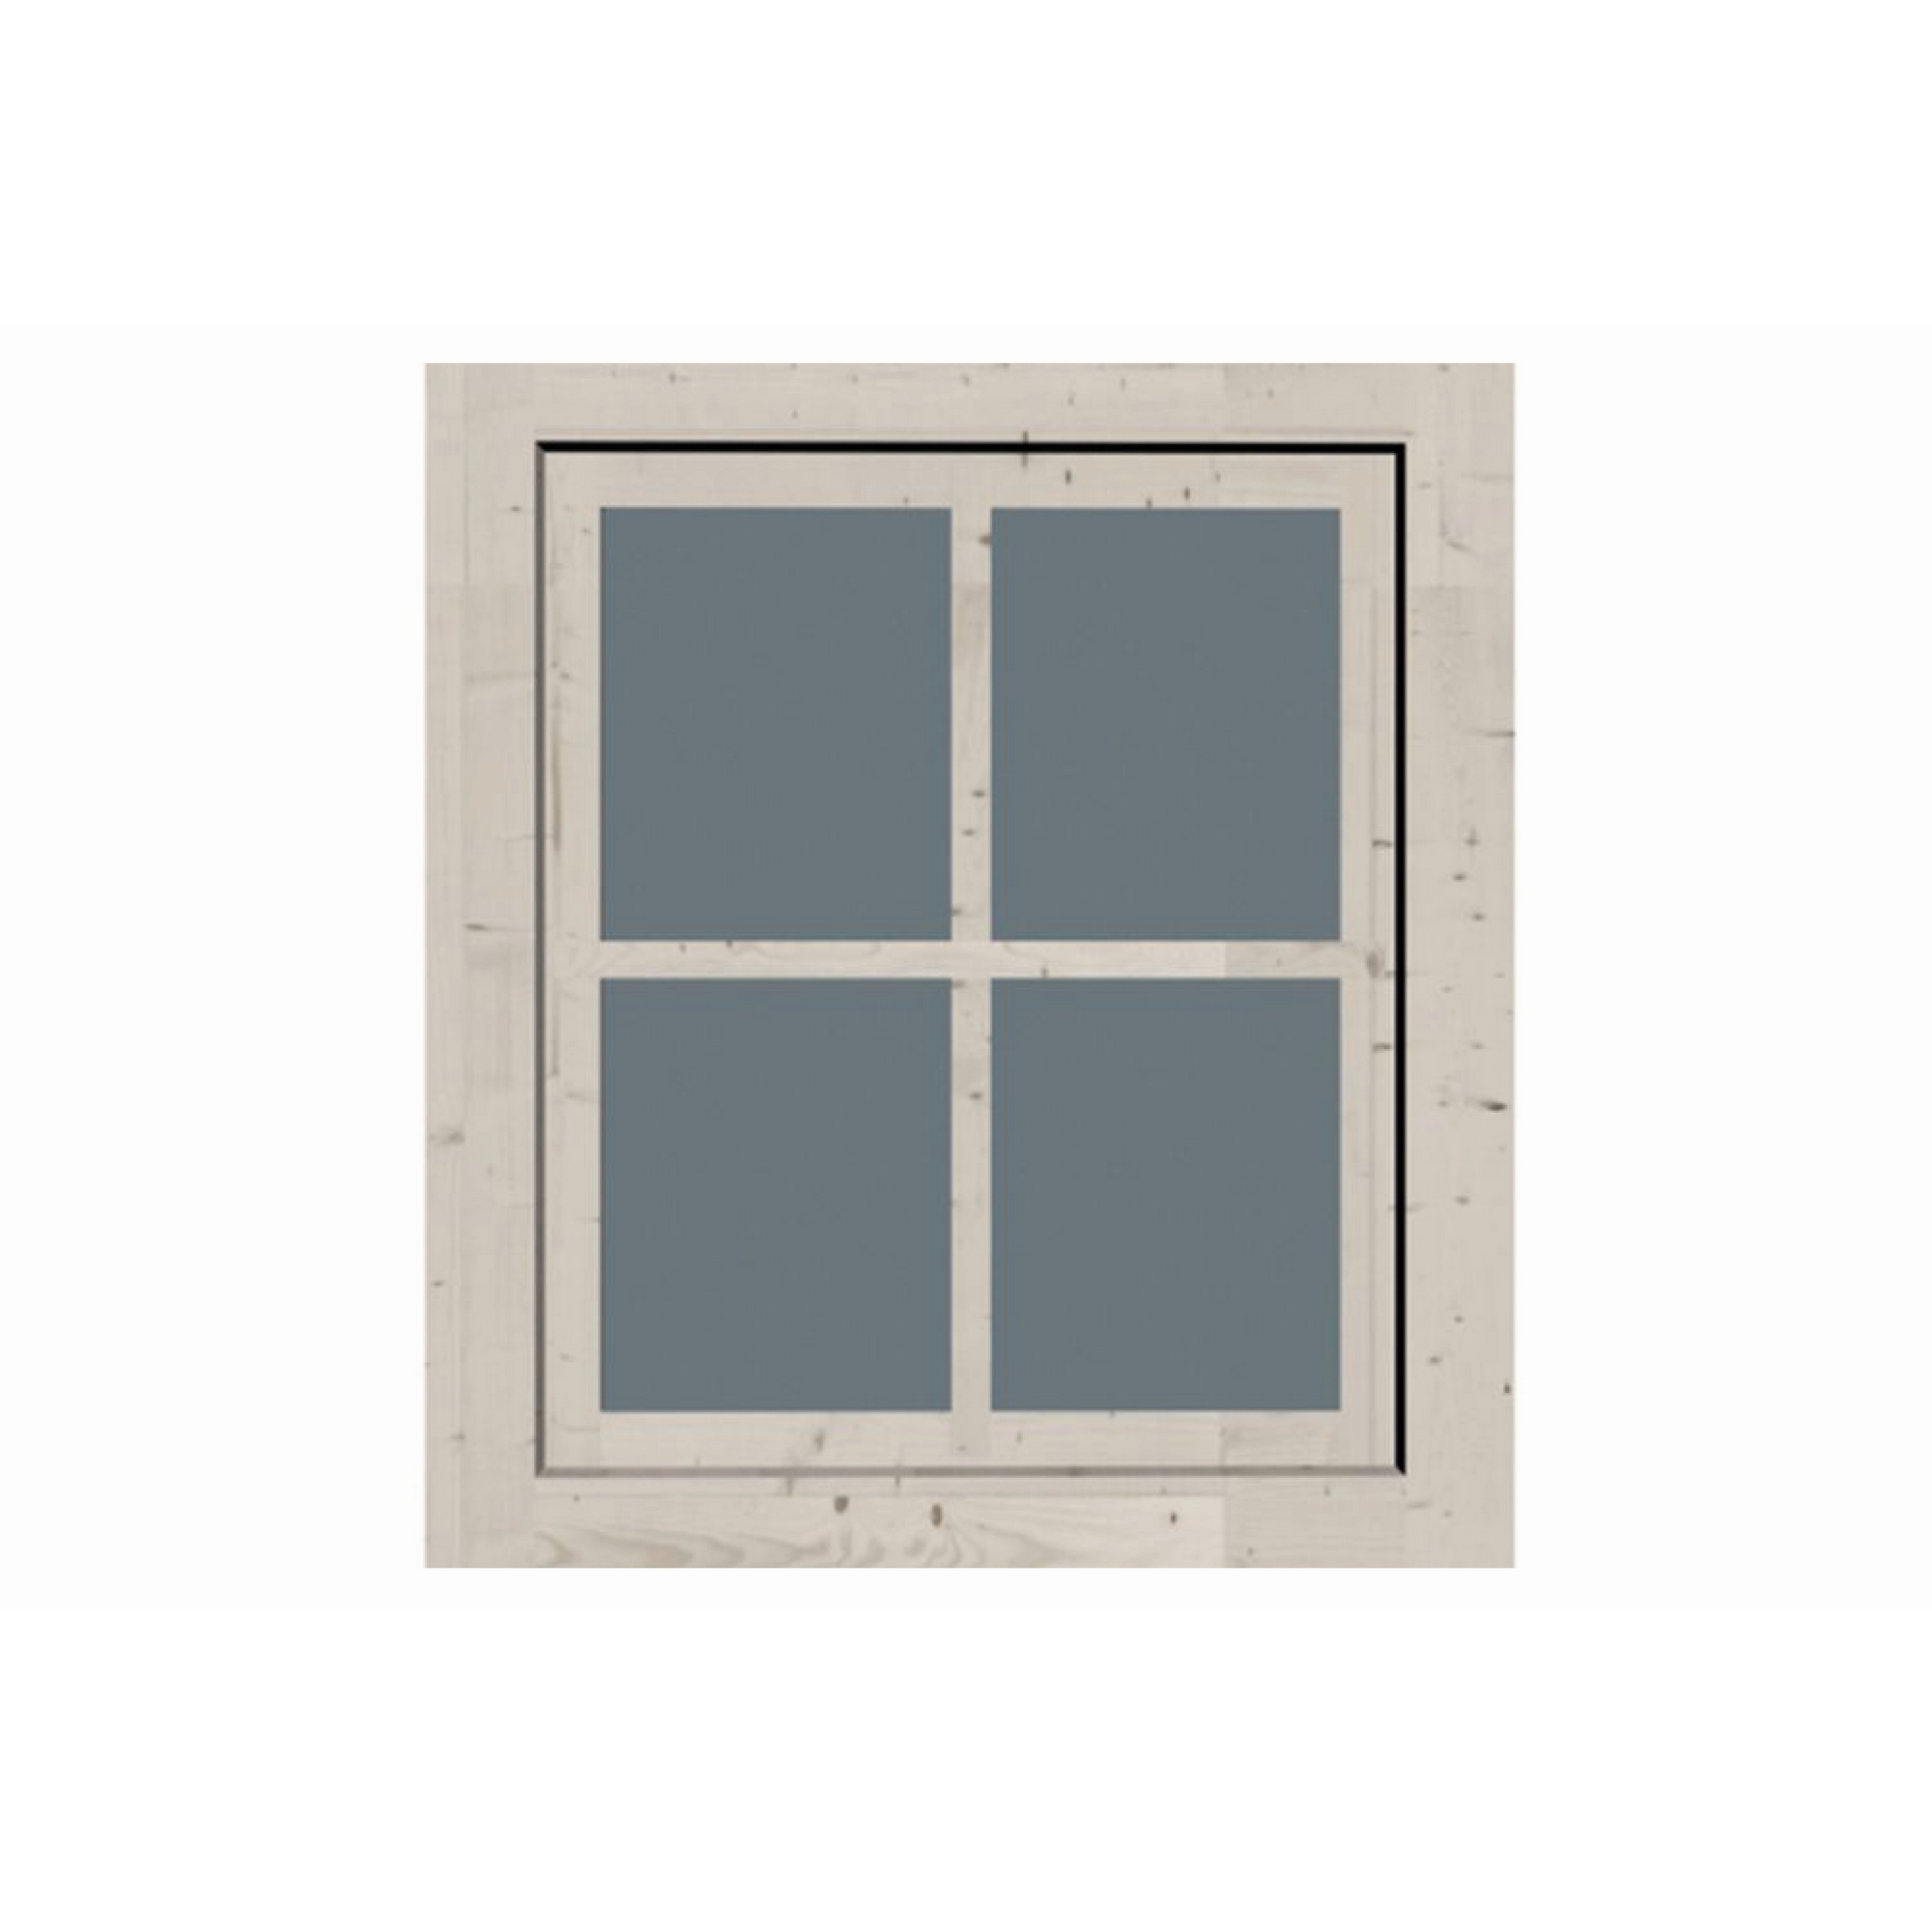 Dreh- und Kippfenster elfenbeinfarben 69 x 79,6 cm + product picture